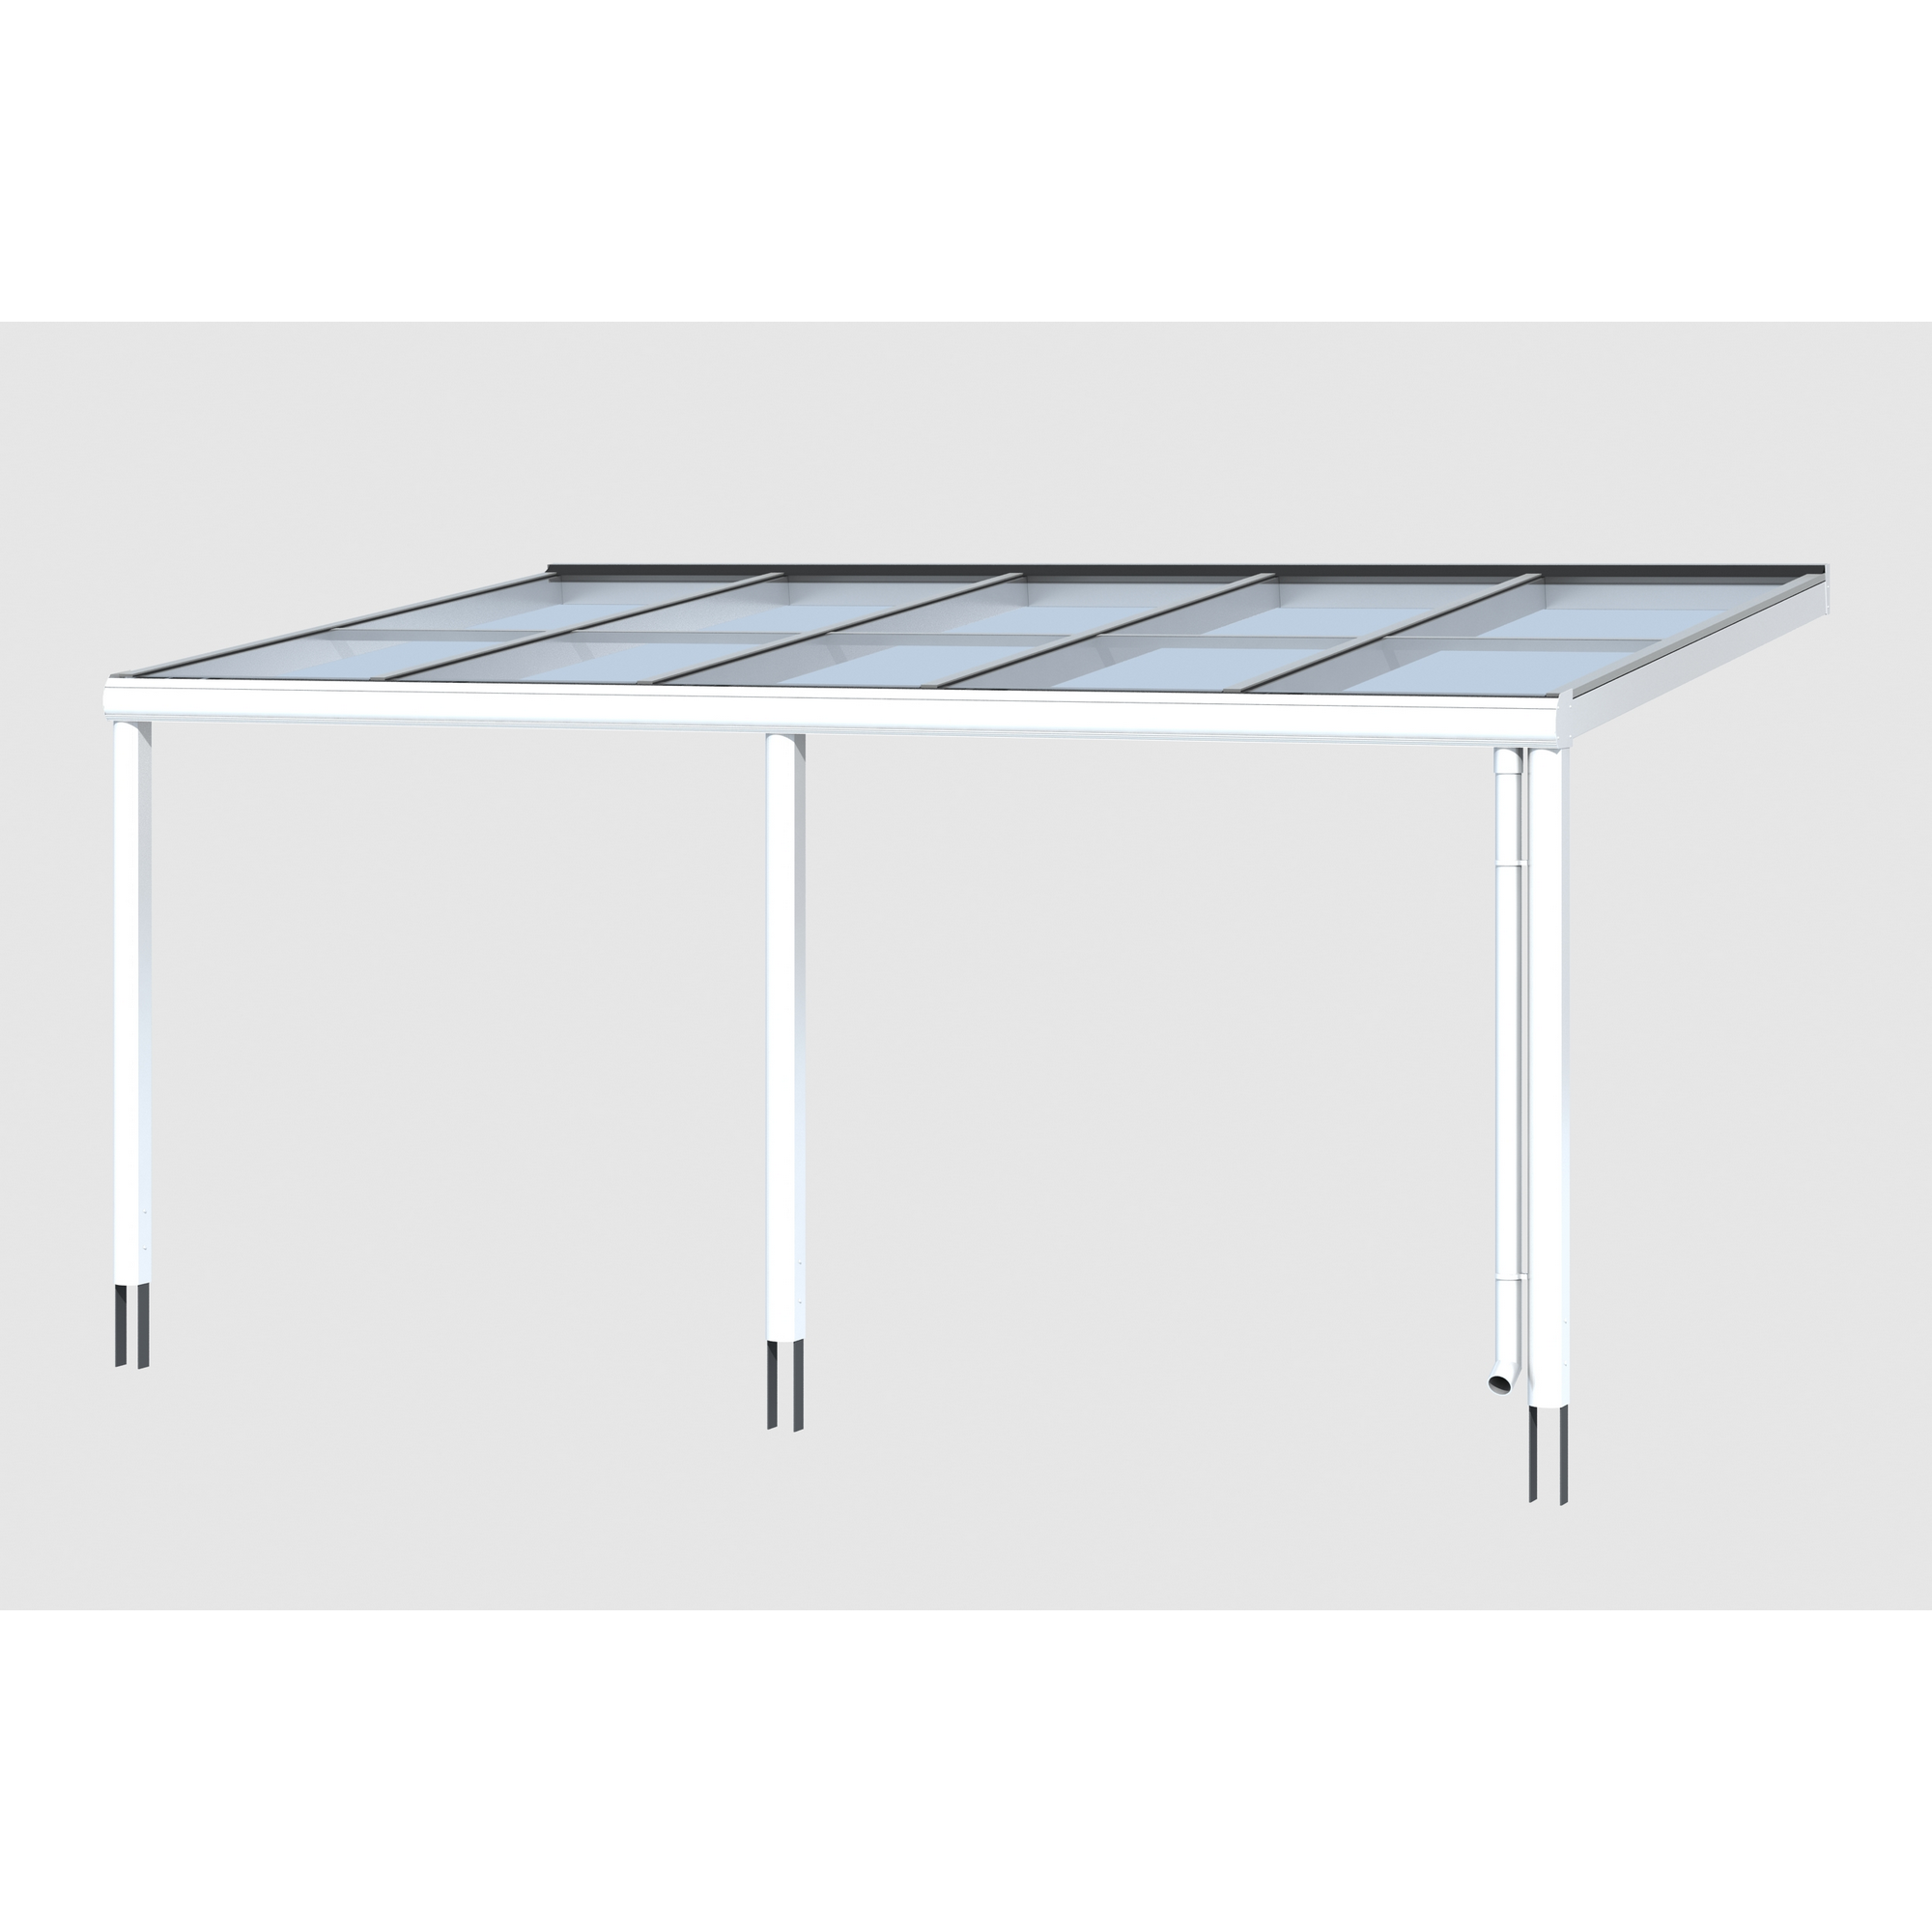 Terrassenüberdachung 'Monza' 541 x 257 cm Aluminium Verbundsicherheitsglas weiß + product picture